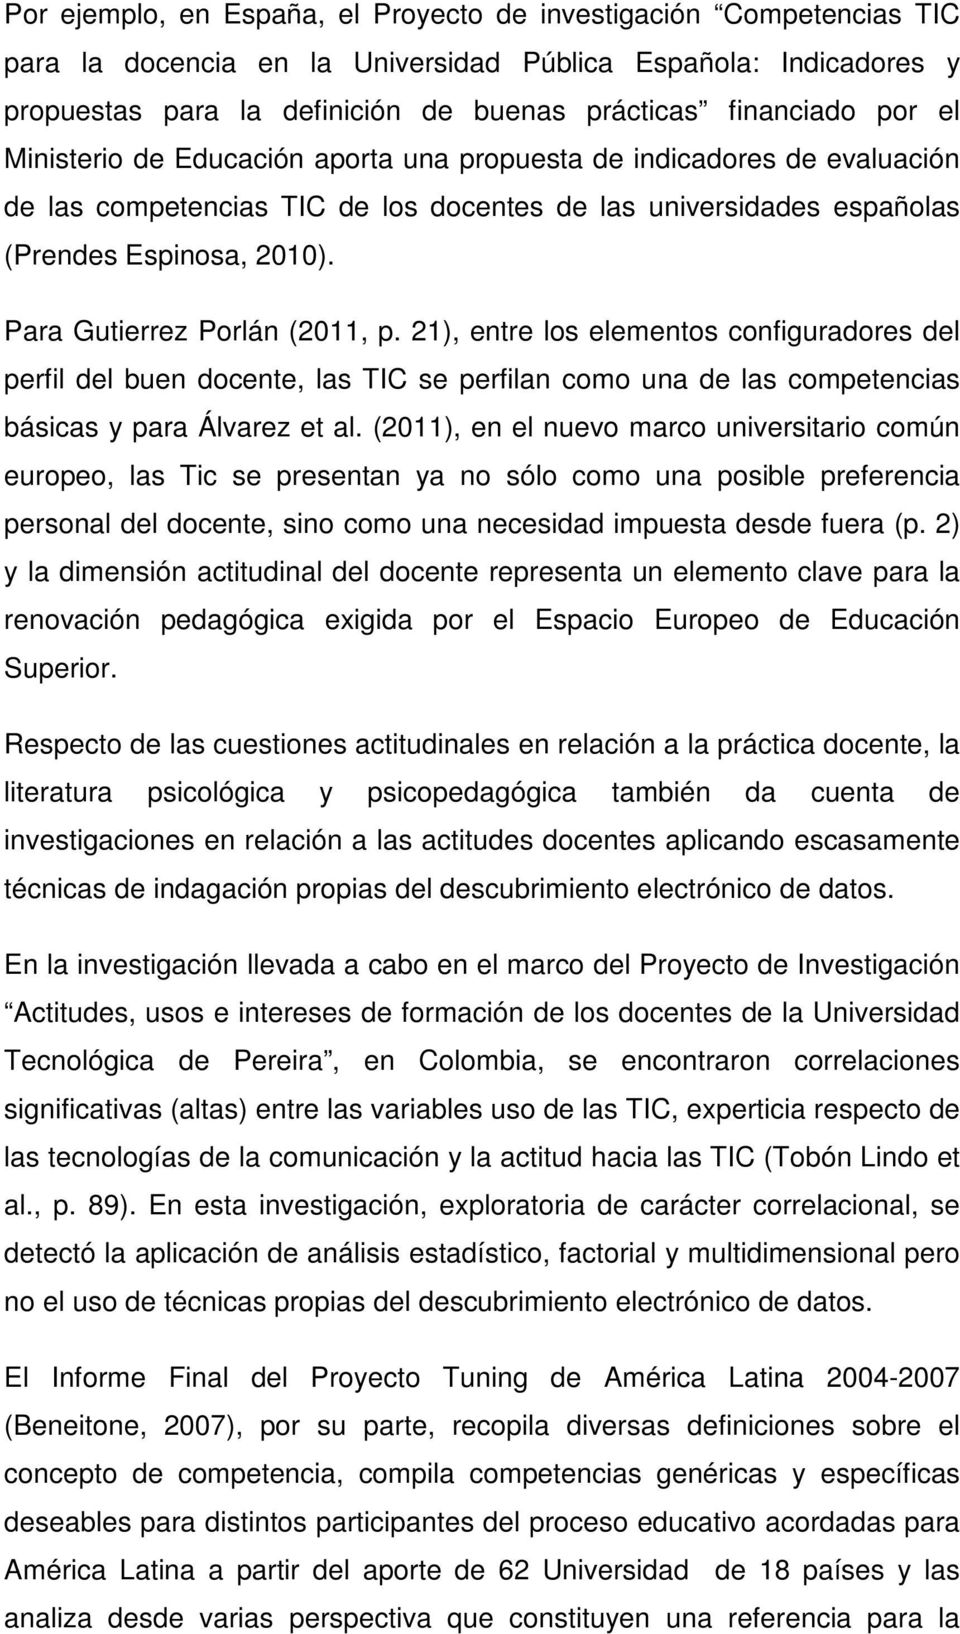 Para Gutierrez Porlán (2011, p. 21), entre los elementos configuradores del perfil del buen docente, las TIC se perfilan como una de las competencias básicas y para Álvarez et al.